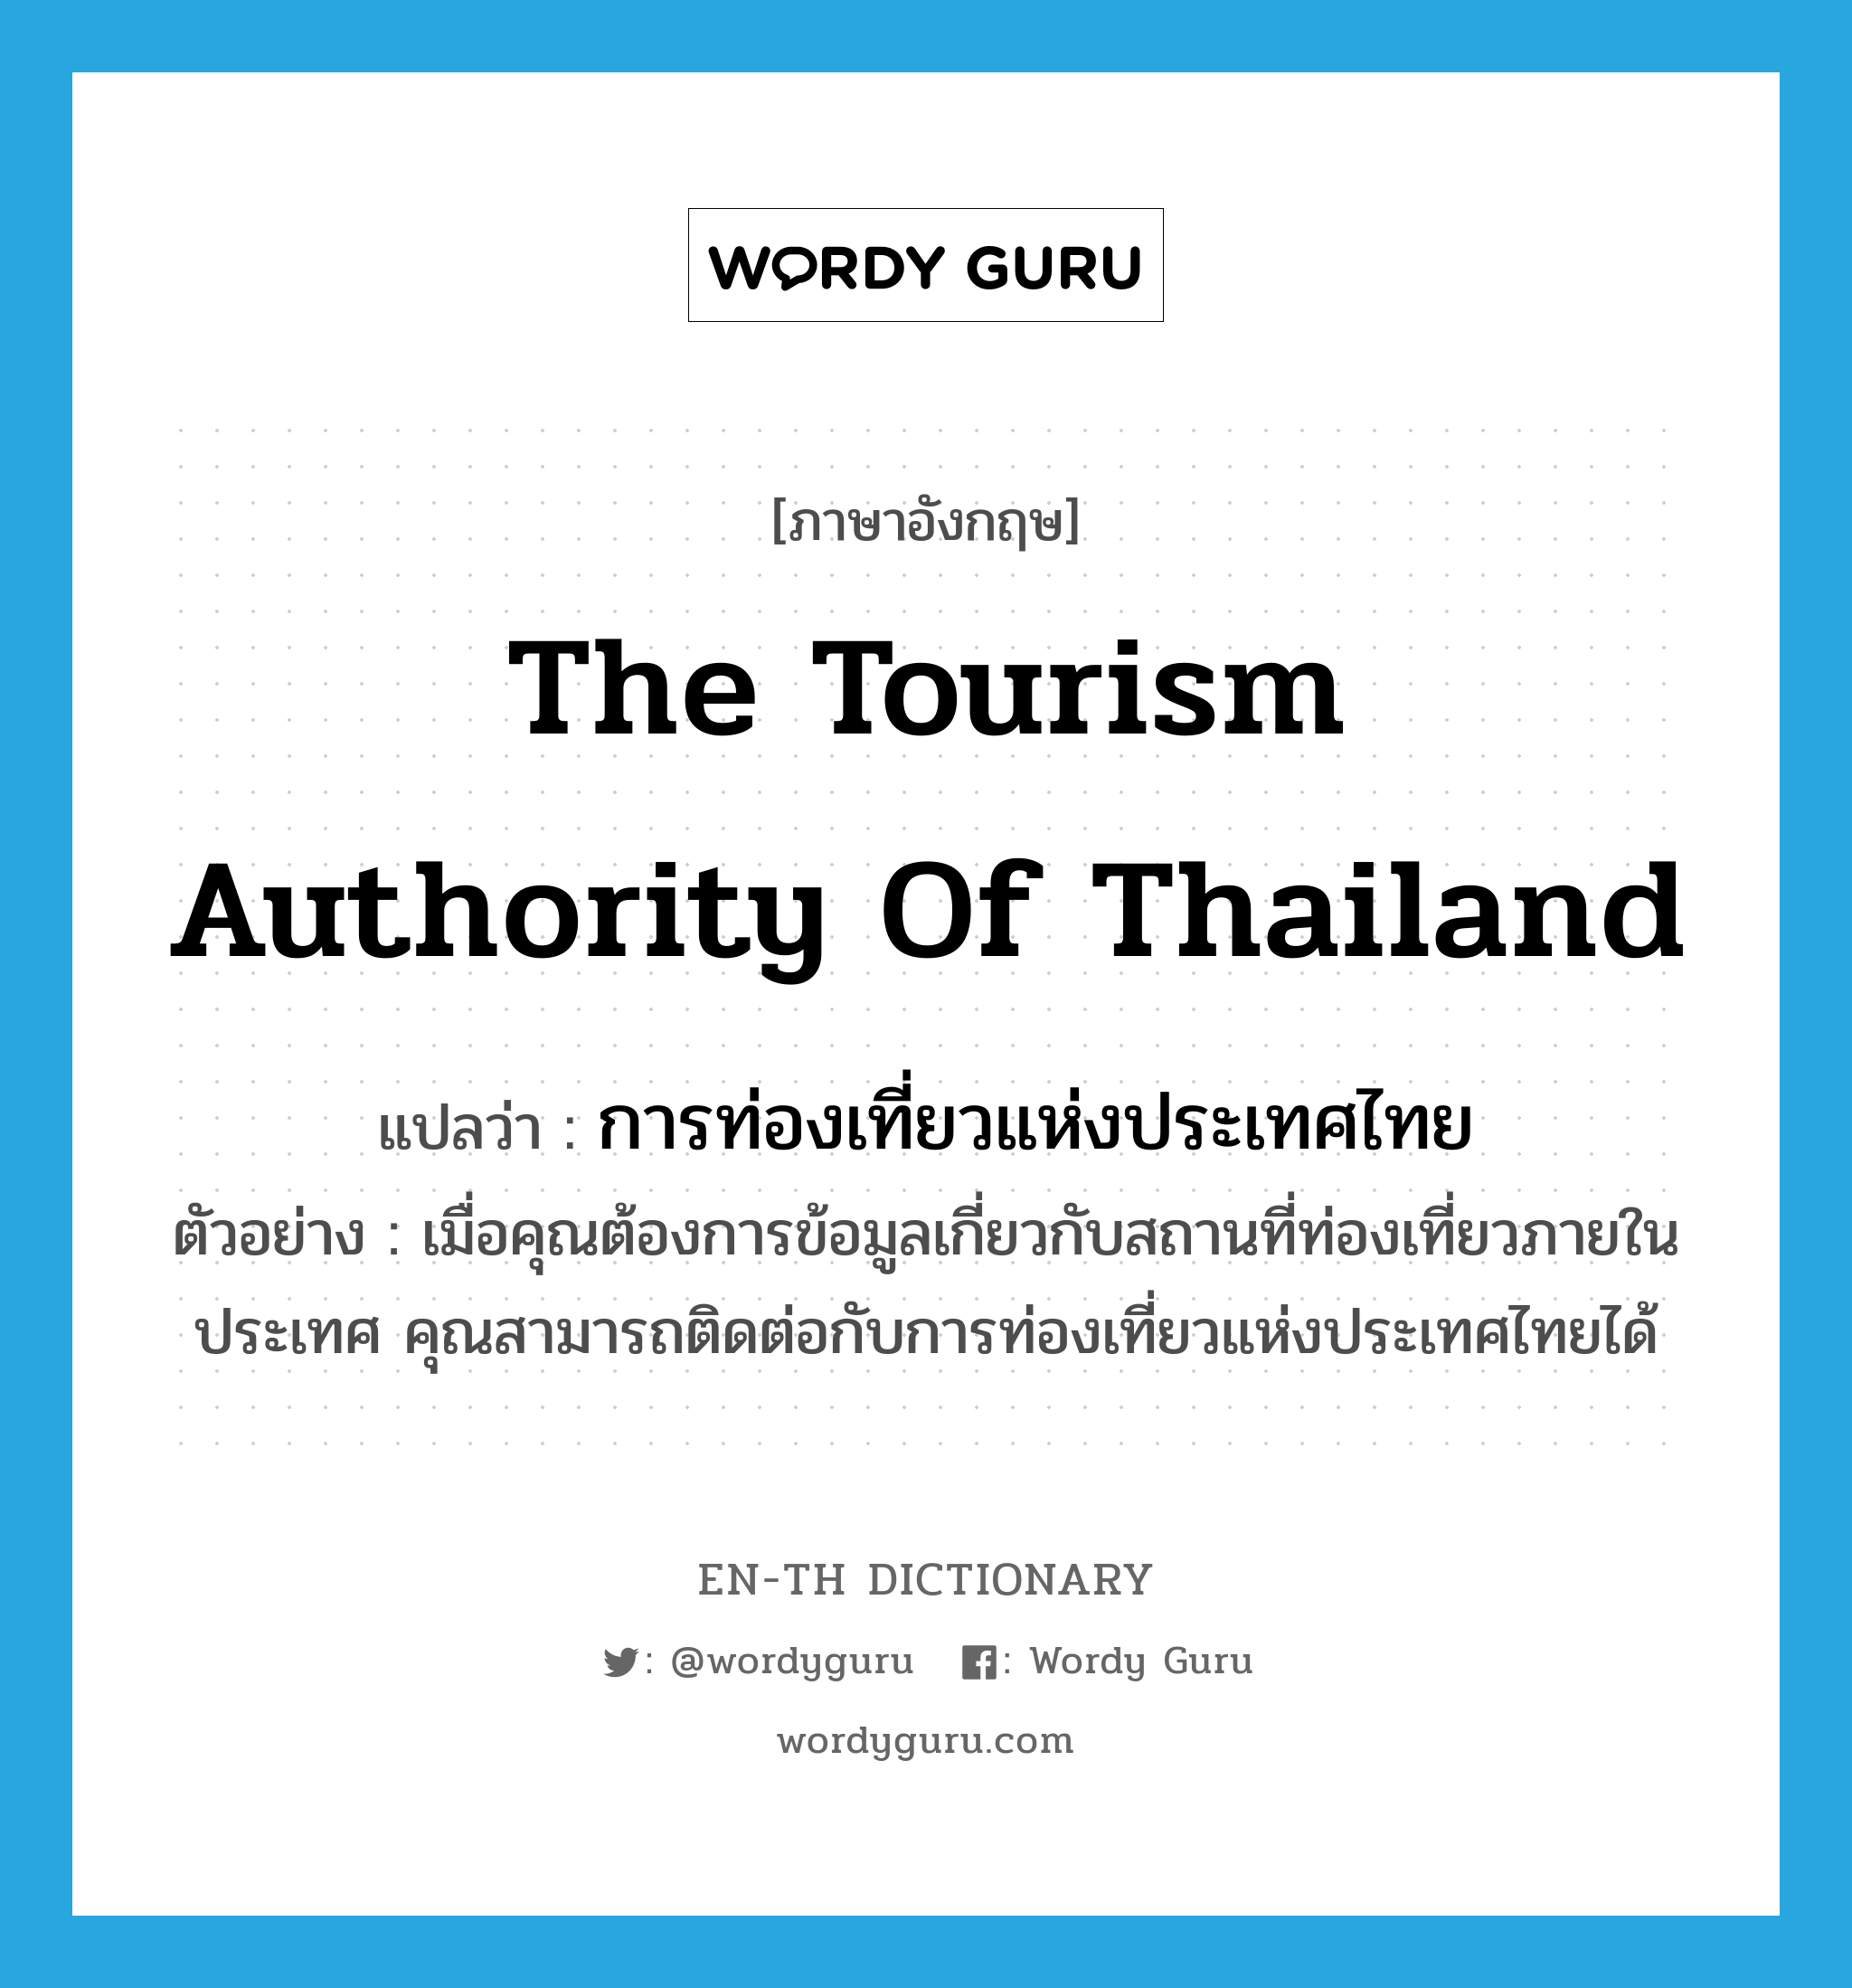 การท่องเที่ยวแห่งประเทศไทย ภาษาอังกฤษ?, คำศัพท์ภาษาอังกฤษ การท่องเที่ยวแห่งประเทศไทย แปลว่า The Tourism Authority of Thailand ประเภท N ตัวอย่าง เมื่อคุณต้องการข้อมูลเกี่ยวกับสถานที่ท่องเที่ยวภายในประเทศ คุณสามารถติดต่อกับการท่องเที่ยวแห่งประเทศไทยได้ หมวด N